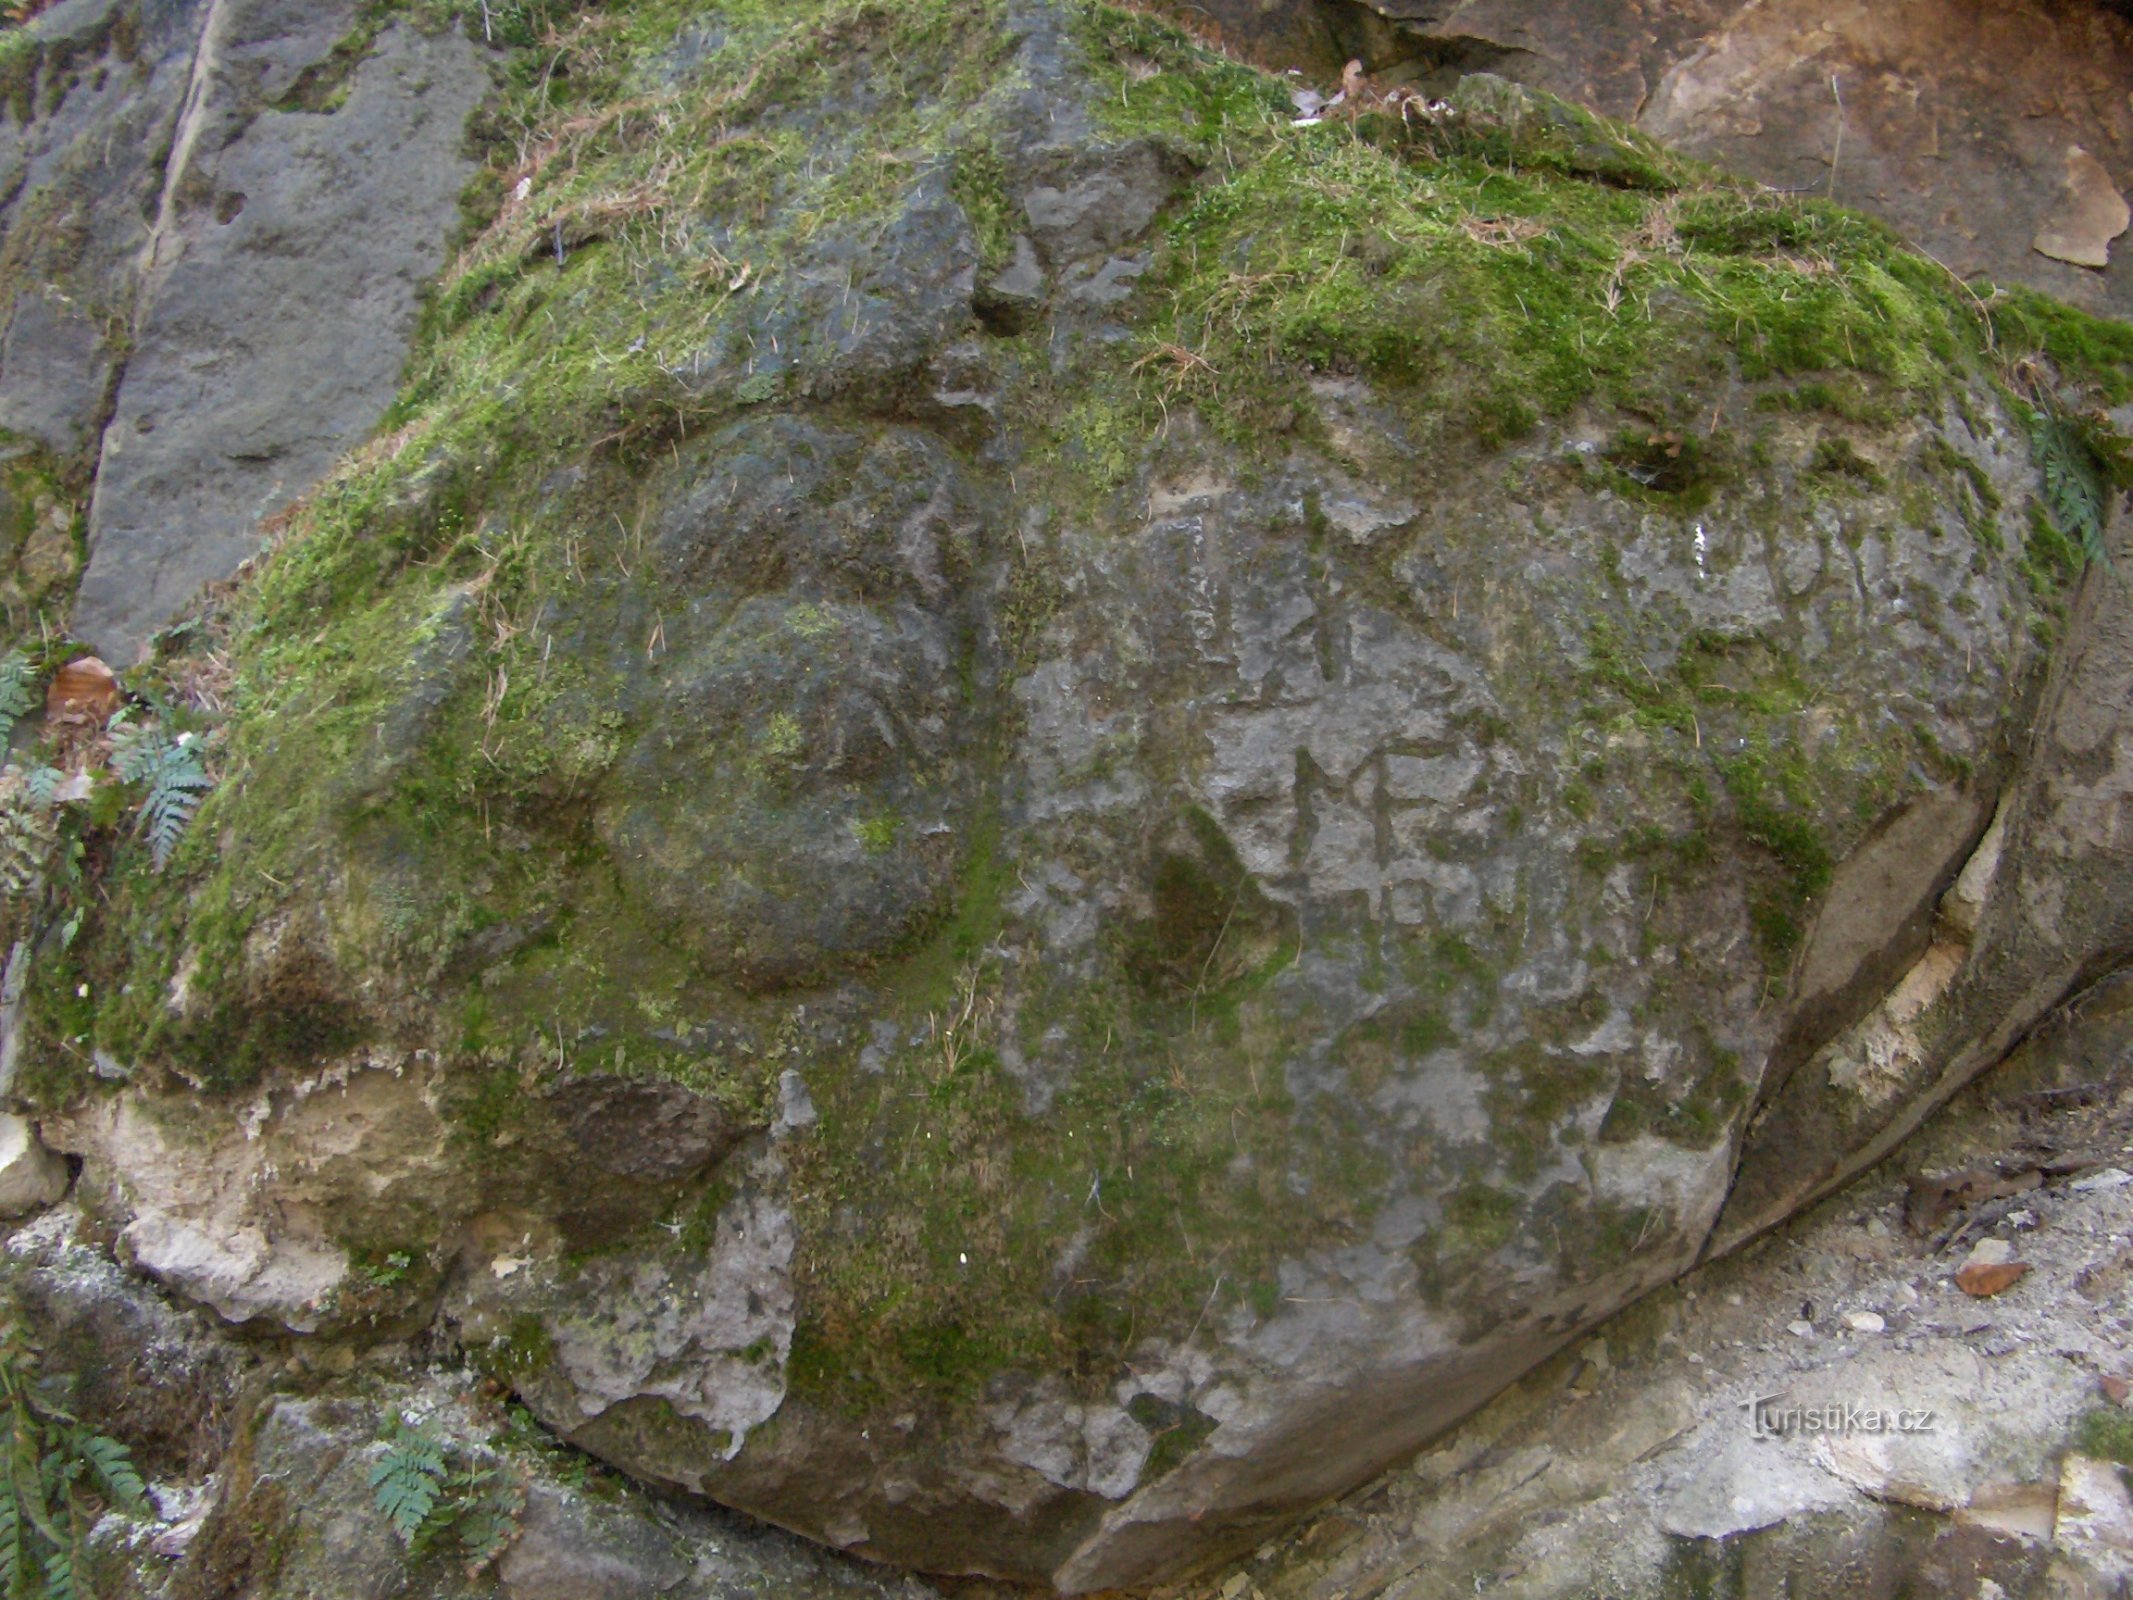 Geheimnisvolle Gesichter und Inschriften auf dem Felsen.